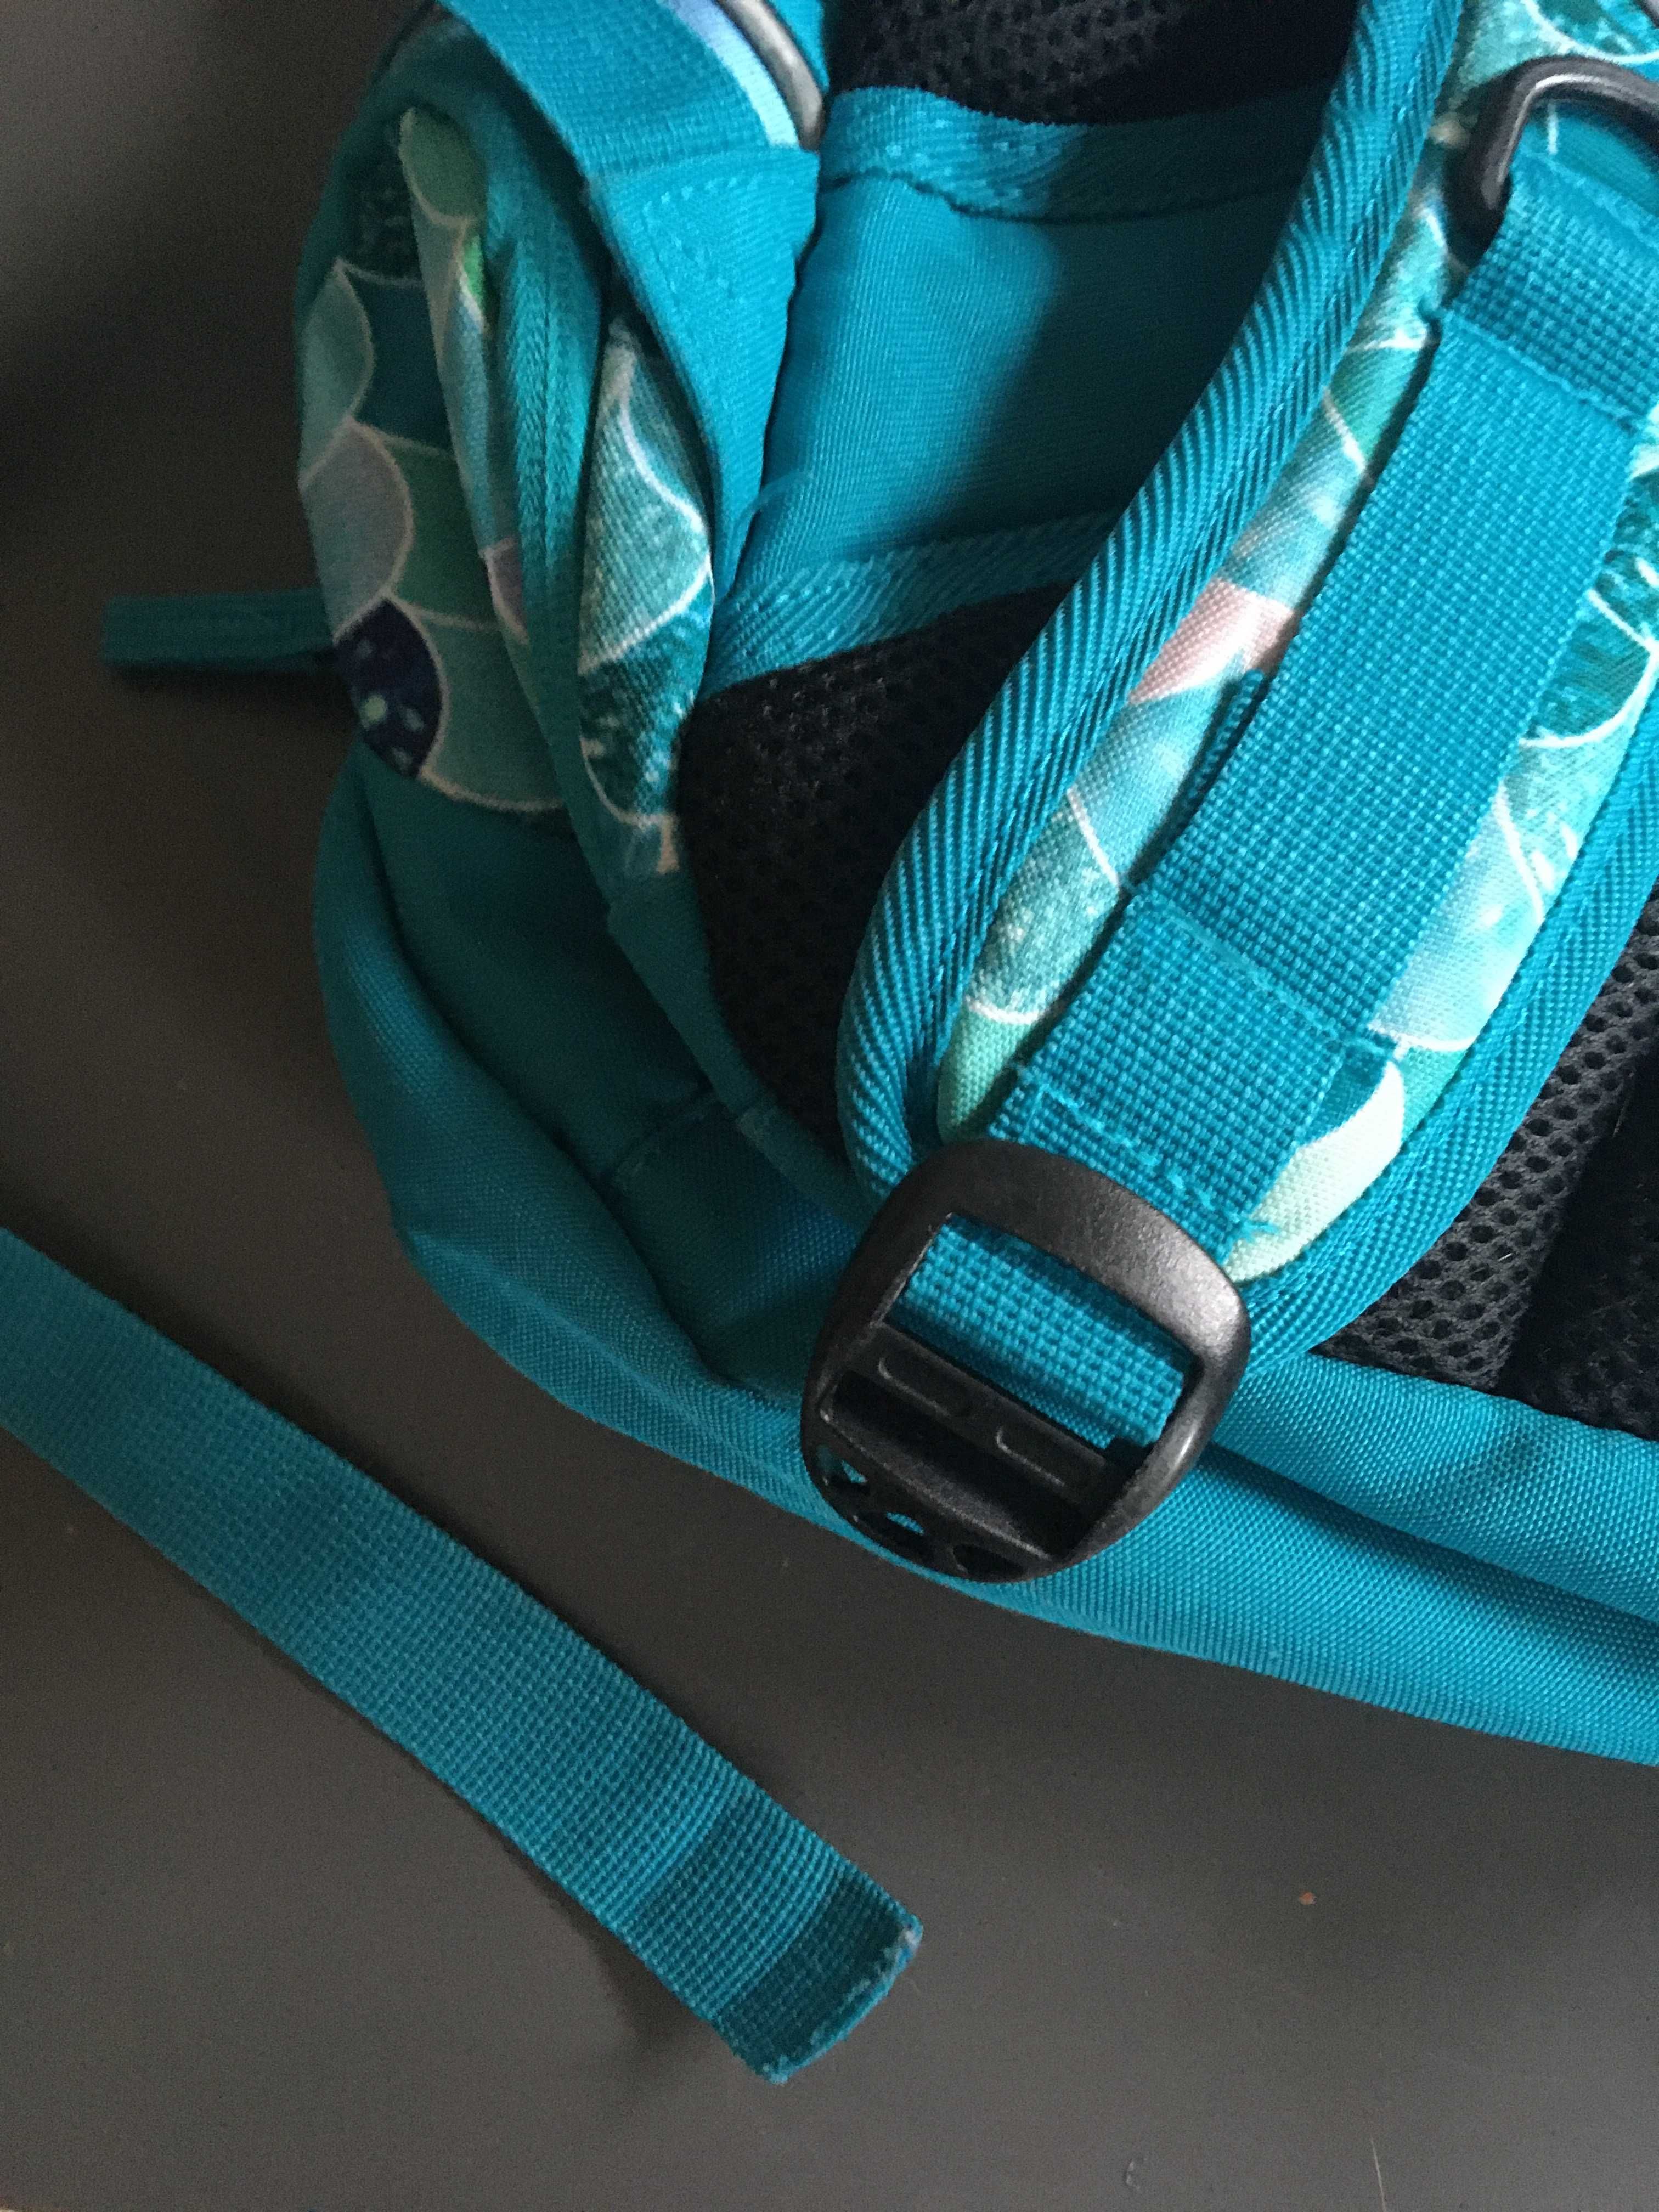 Plecak szkolny Mermaid firmy Paperdot i dwie nerki / saszetki